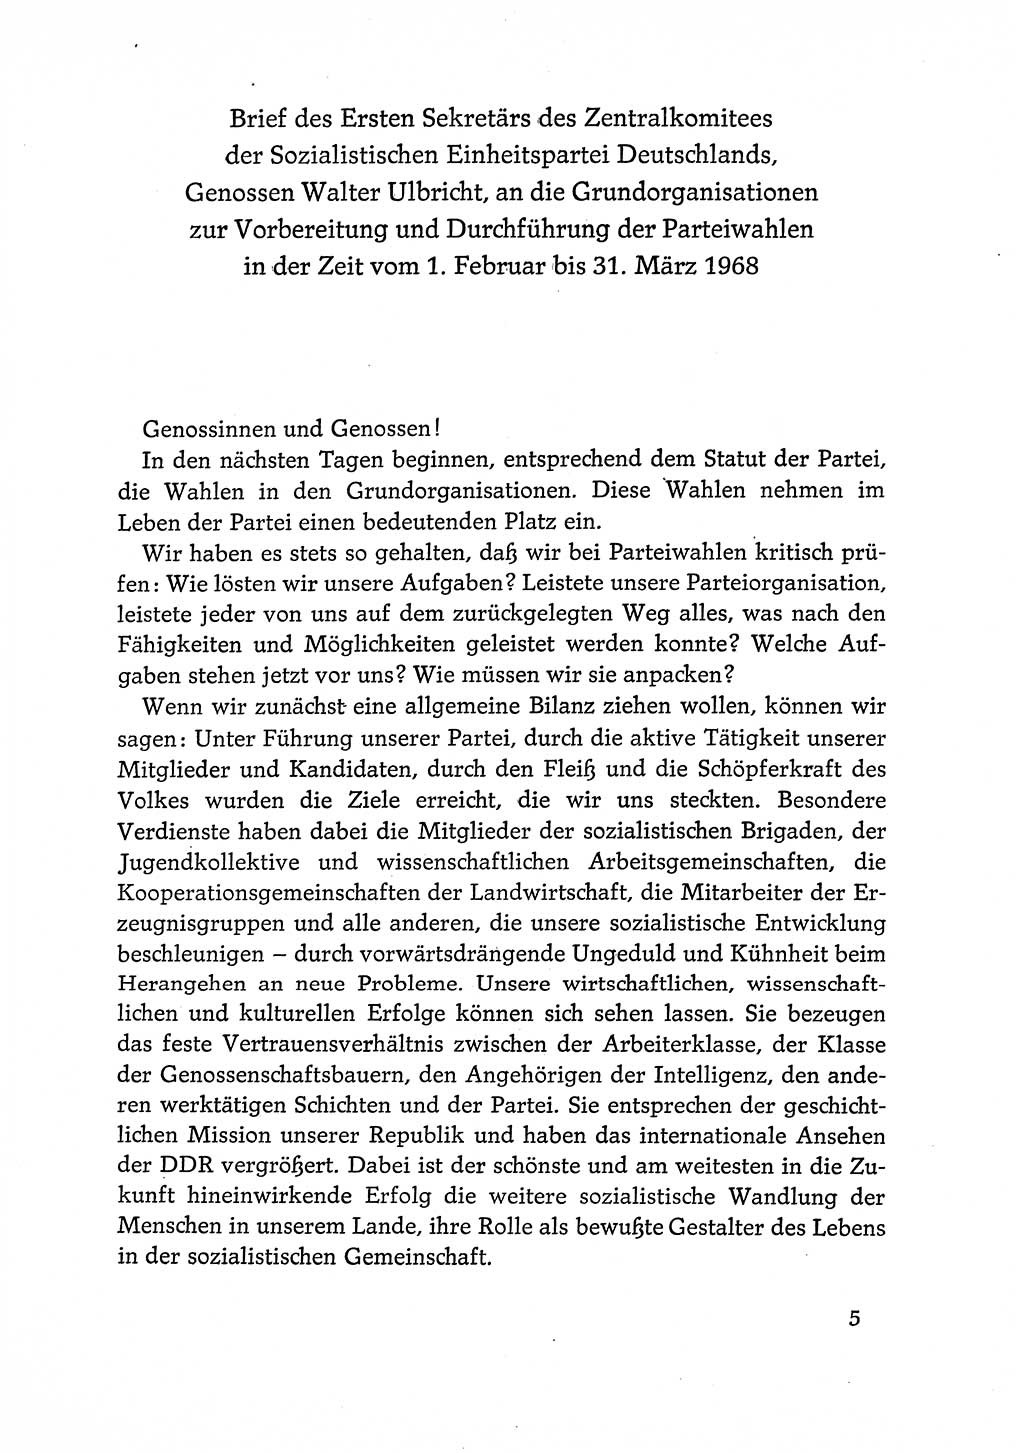 Dokumente der Sozialistischen Einheitspartei Deutschlands (SED) [Deutsche Demokratische Republik (DDR)] 1968-1969, Seite 5 (Dok. SED DDR 1968-1969, S. 5)